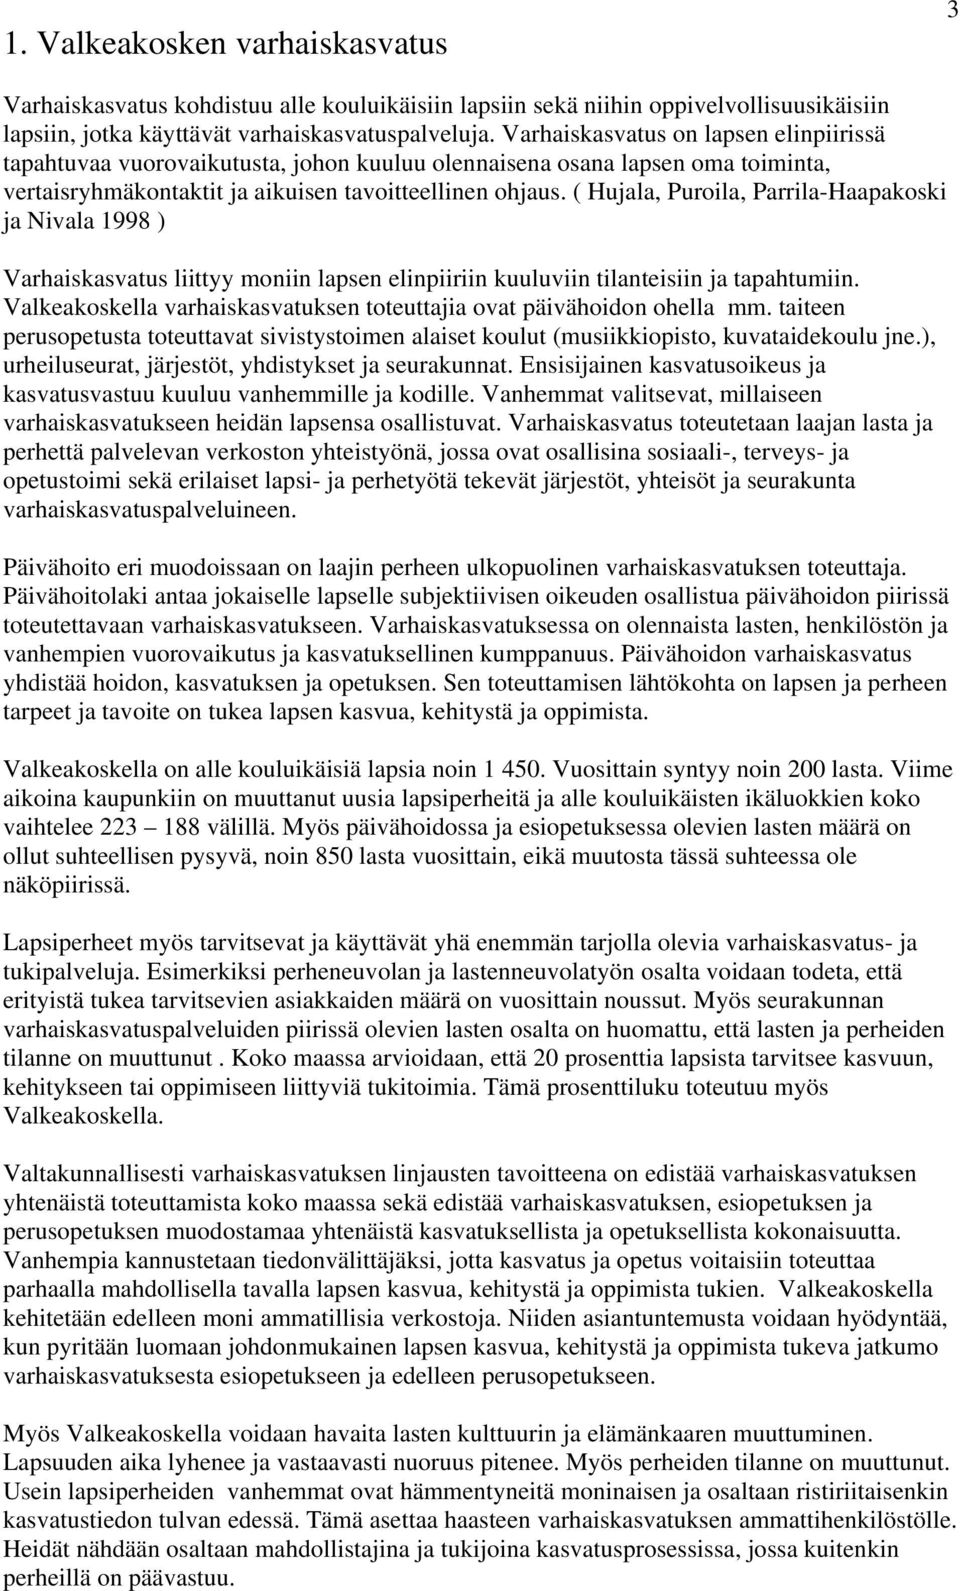 ( Hujala, Puroila, Parrila-Haapakoski ja Nivala 1998 ) Varhaiskasvatus liittyy moniin lapsen elinpiiriin kuuluviin tilanteisiin ja tapahtumiin.